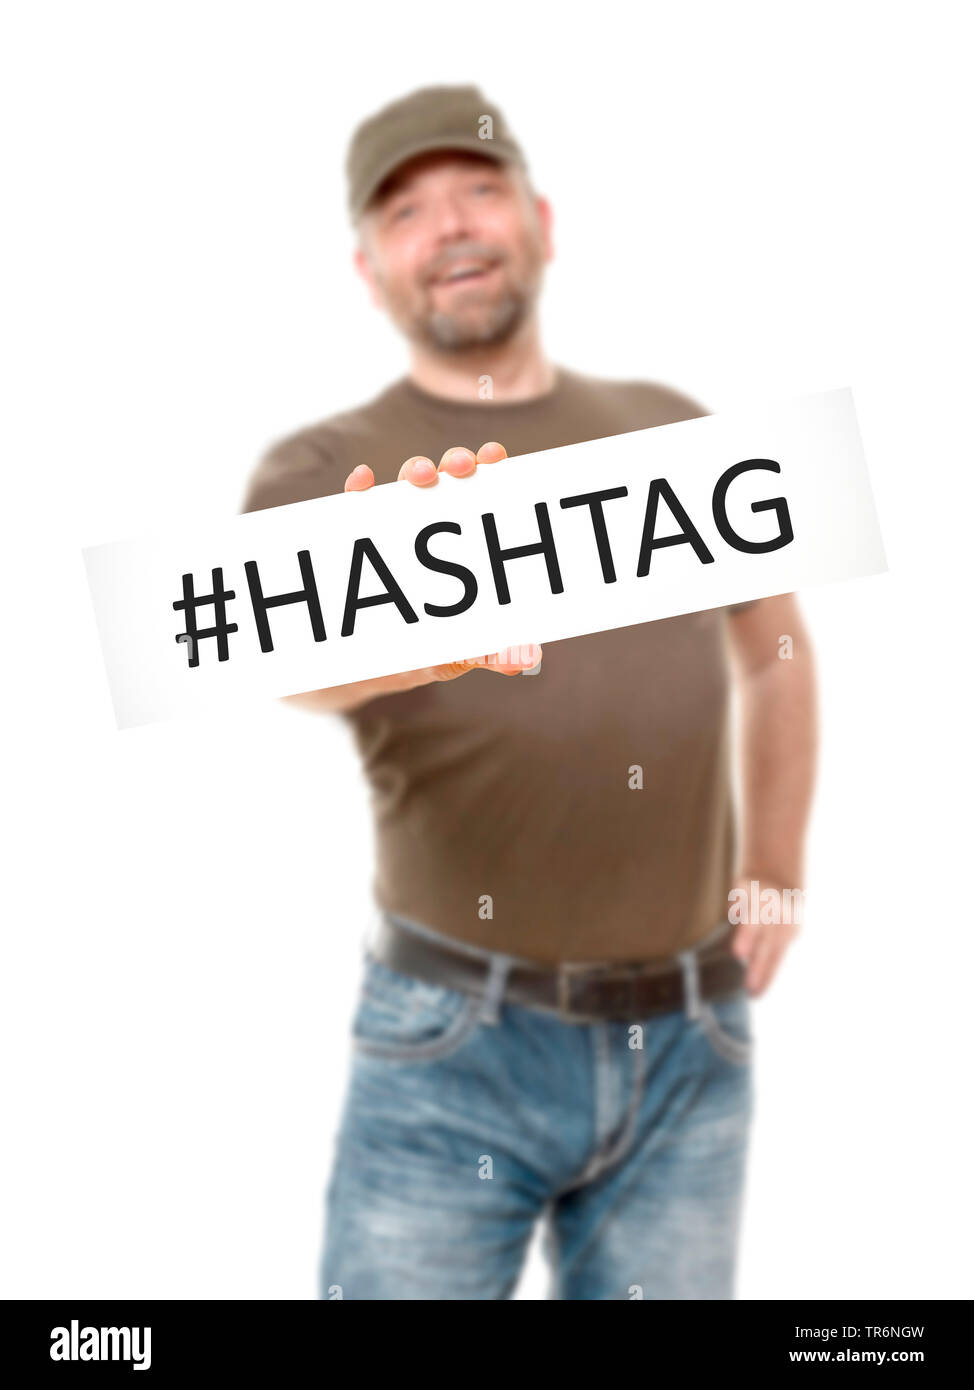 Homme avec une pancarte dans les mains avec l'inscription Hashtag, Allemagne Banque D'Images